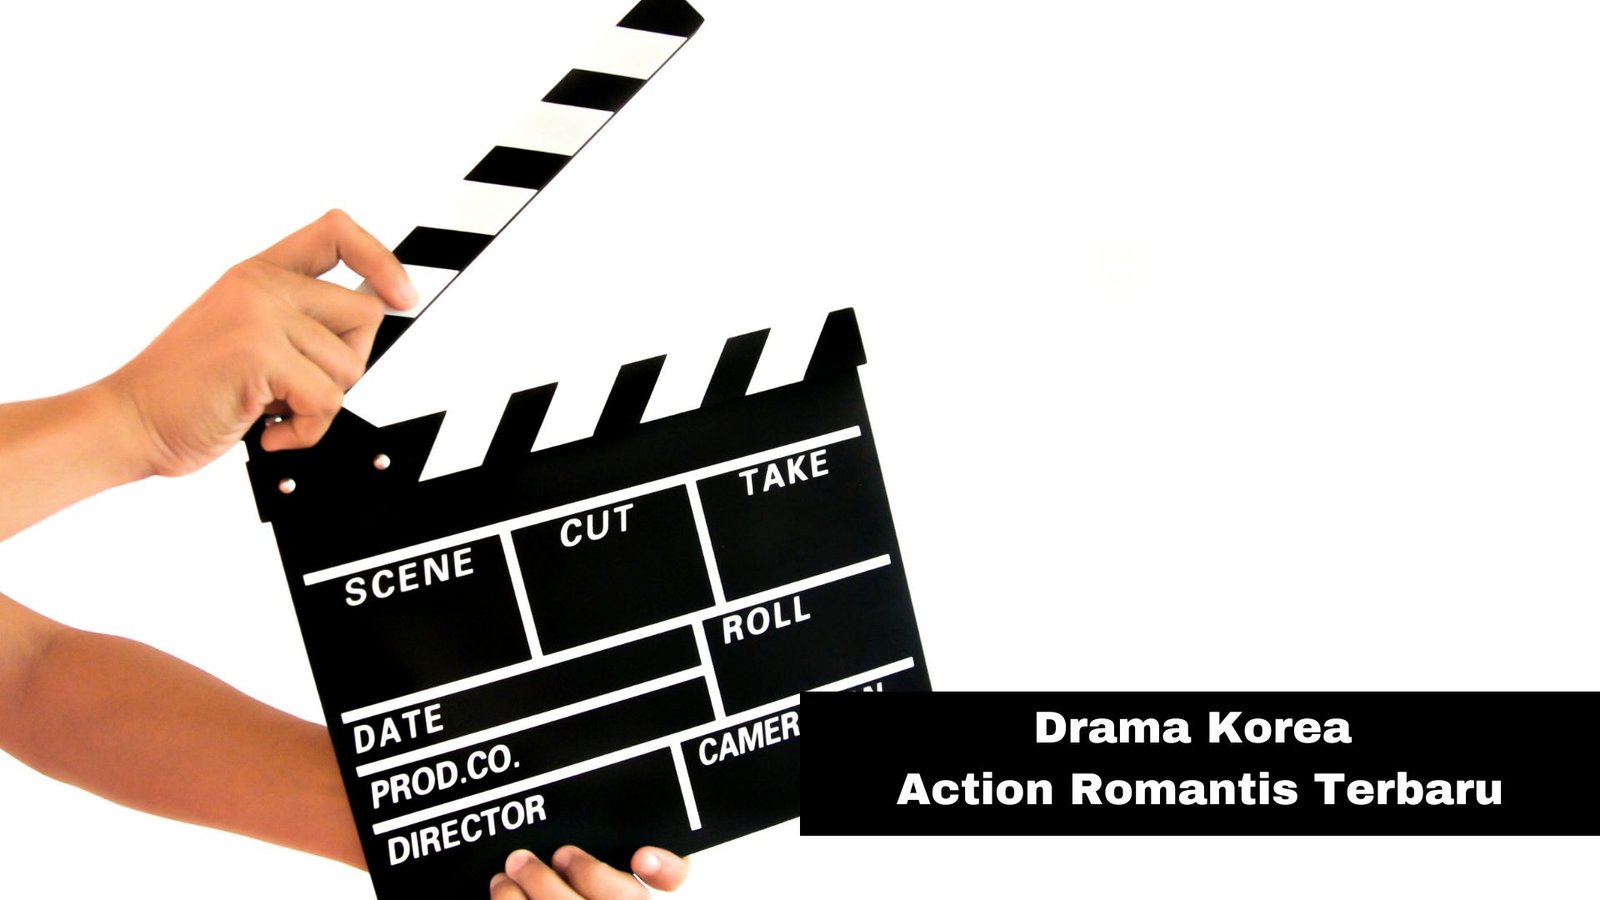 Drama Korea Action Romantis Terbaru